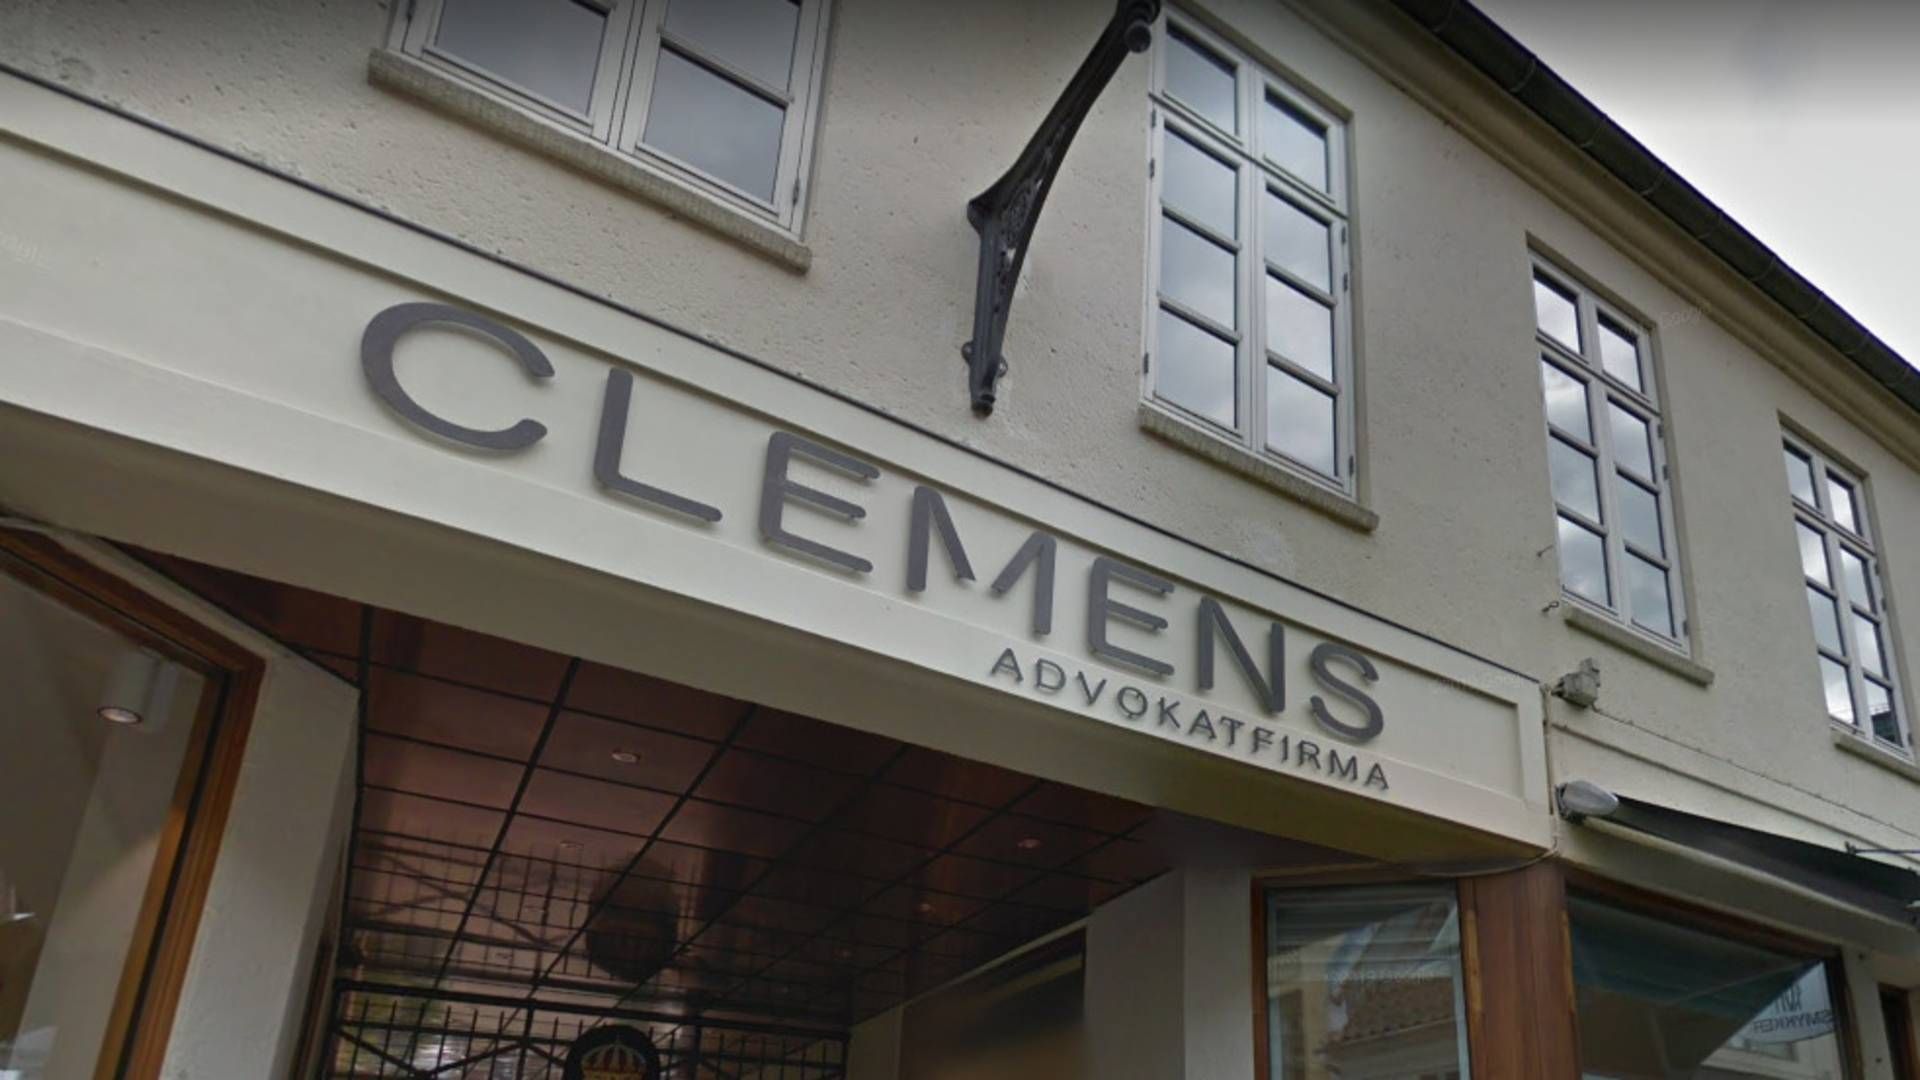 Clemens Advokatfirma holder til her på Skt. Clemens Stræde 7 i Aarhus. | Foto: Google Maps